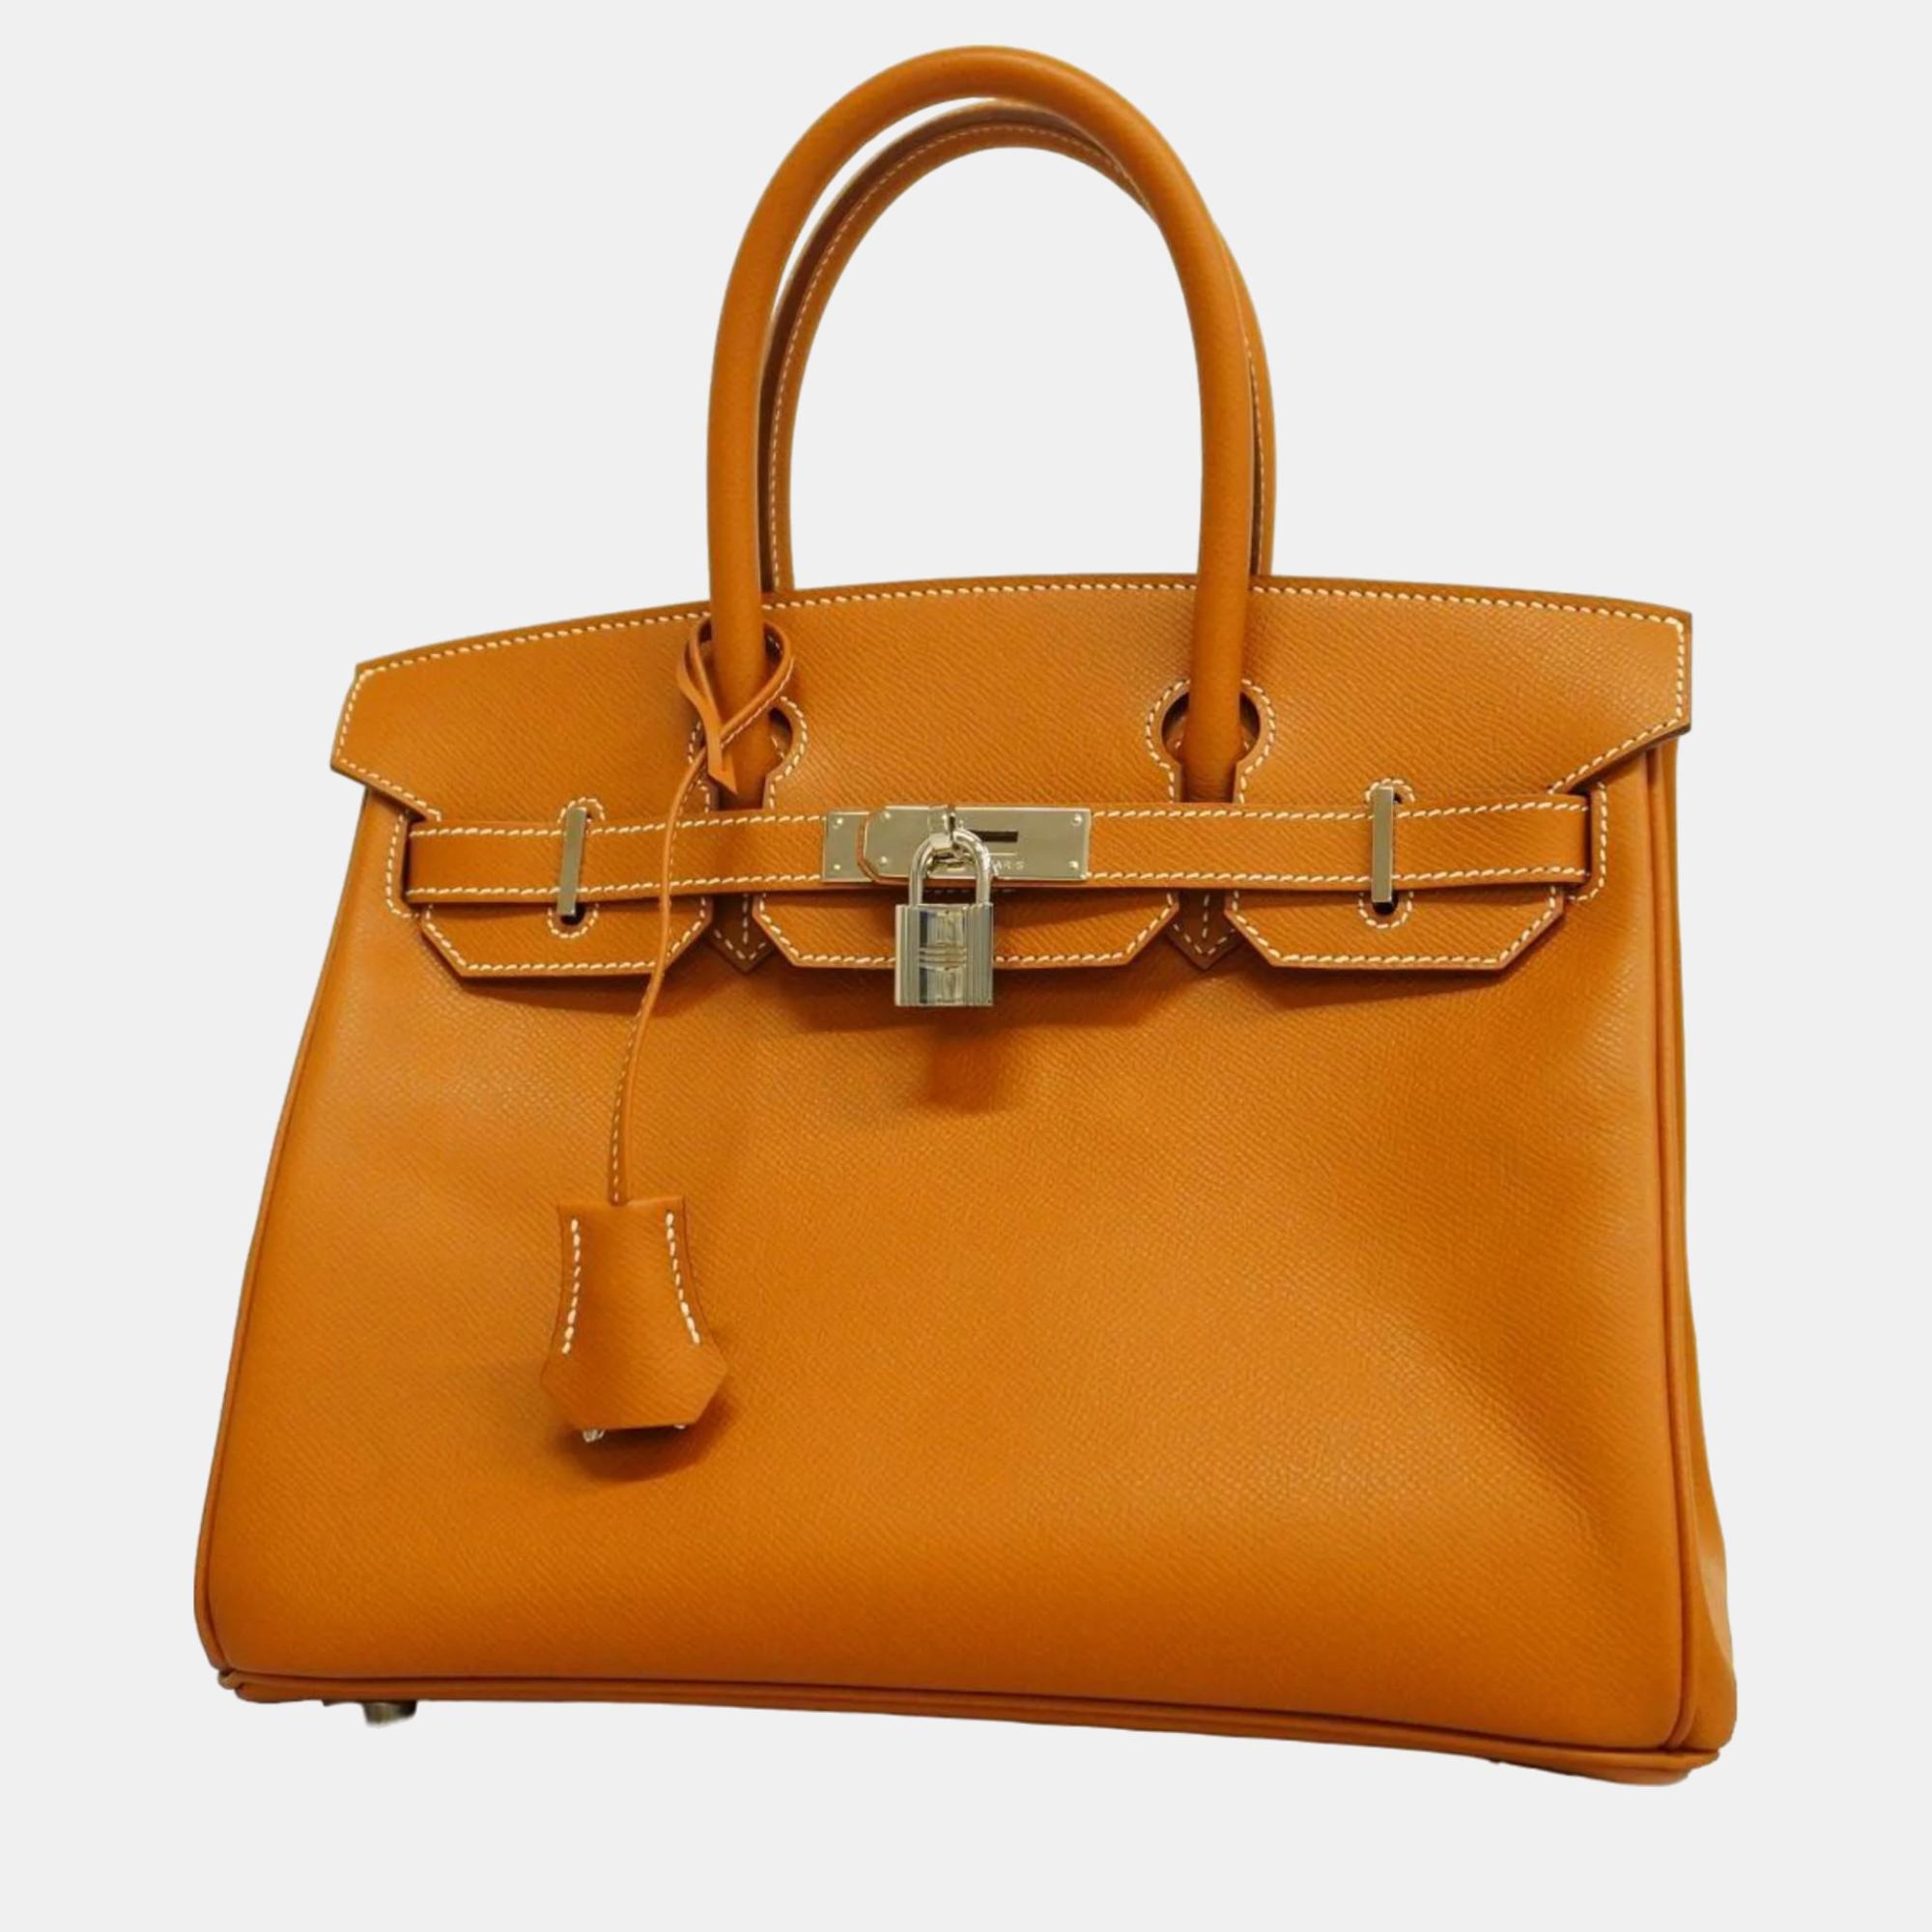 Hermes gold epsom leather birkin 30 tote bag